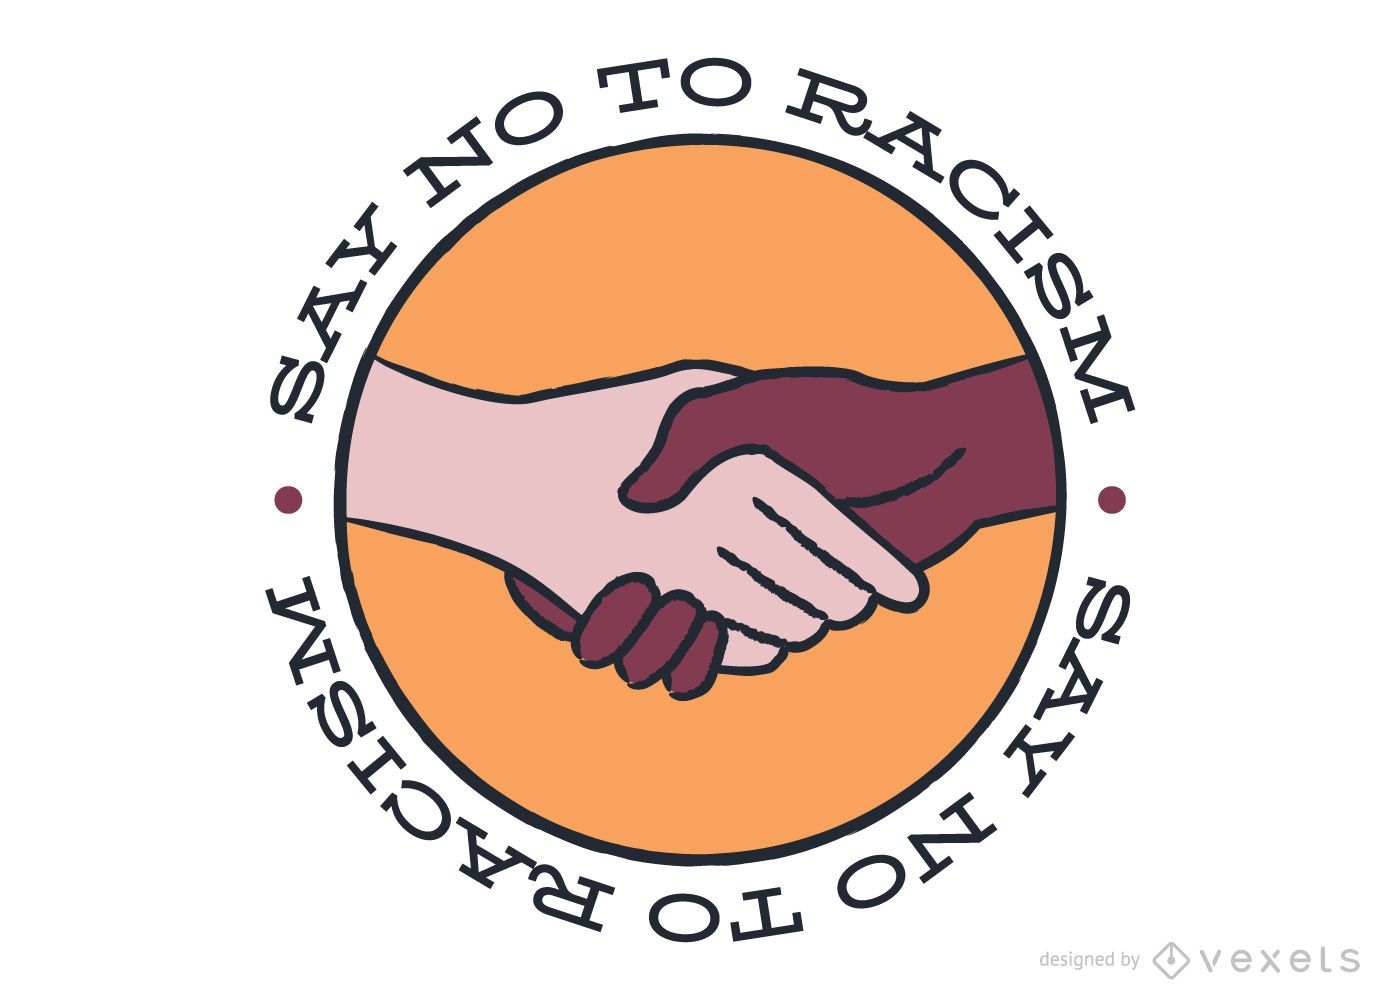 Sagen Sie Nein zu Rassismus Aufkleber Design